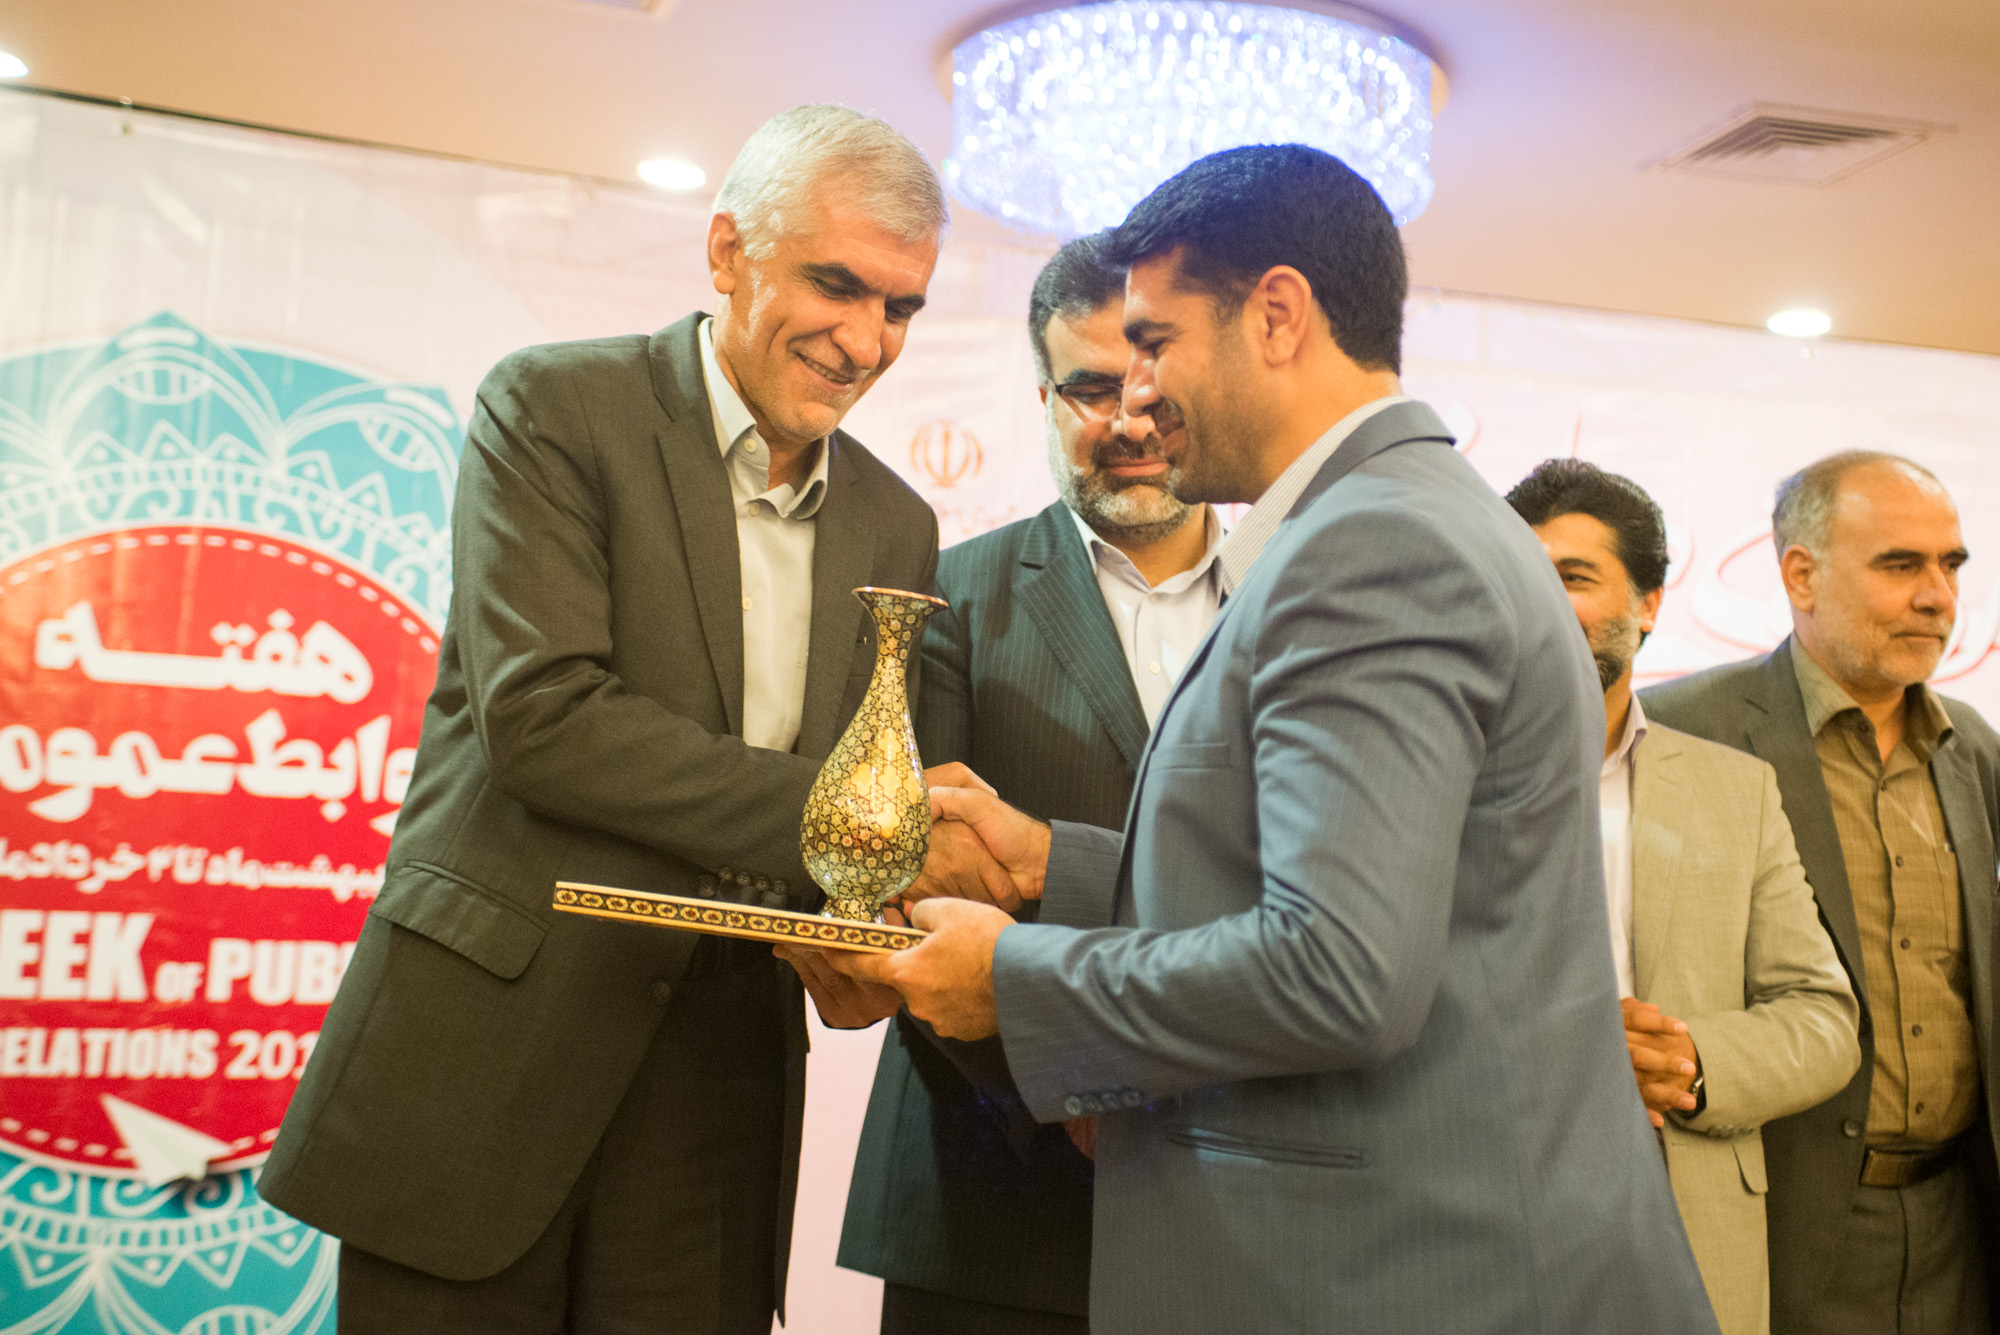 سومین جشنواره روابط عمومی های برتر استان فارس